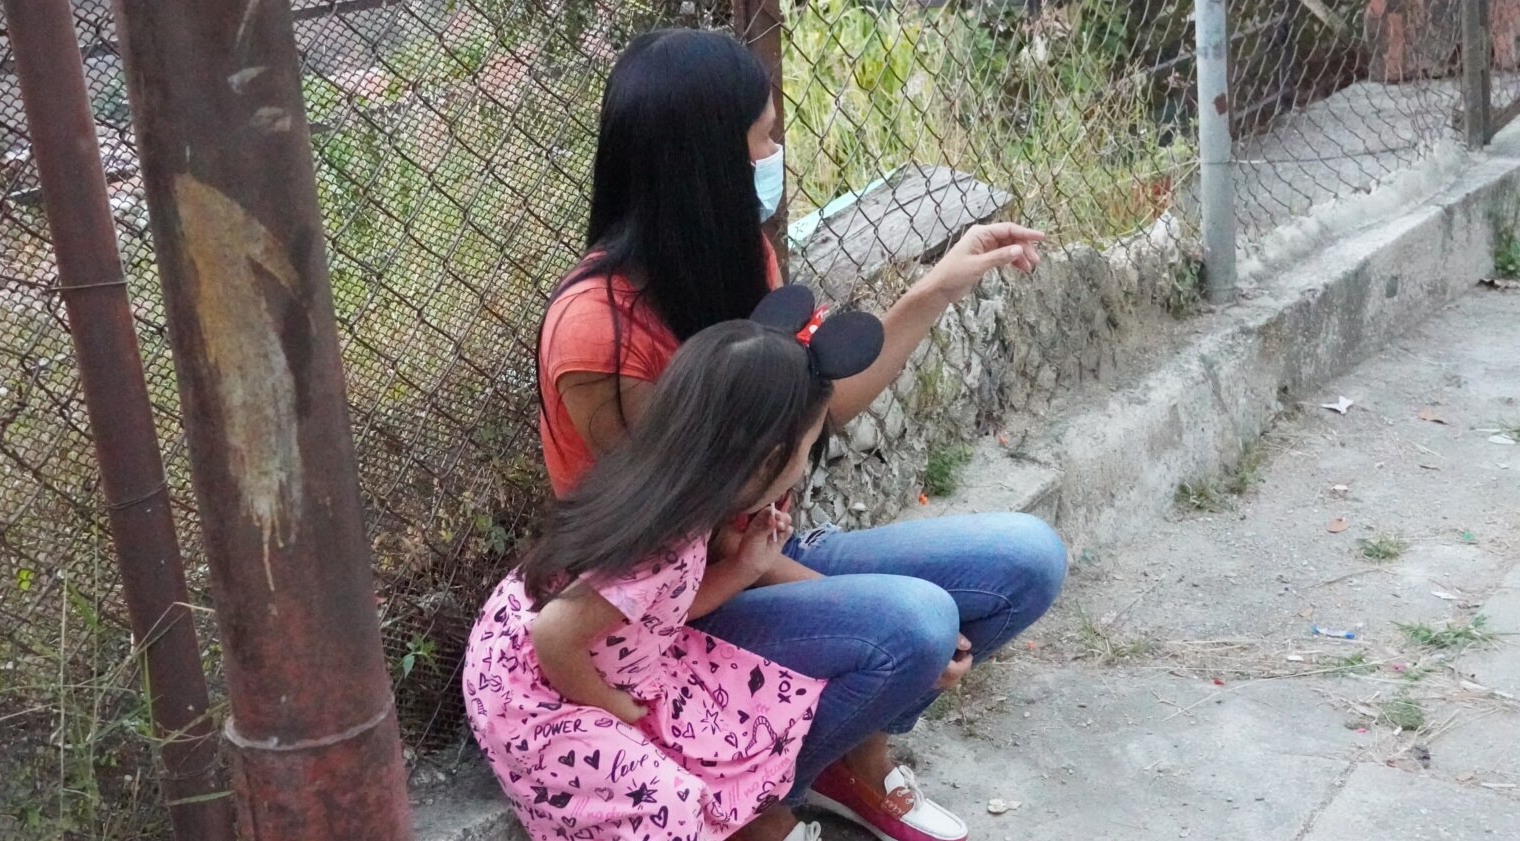 Nueve de cada 10 madres solteras en Venezuela viven en pobreza, según estudio (Video)